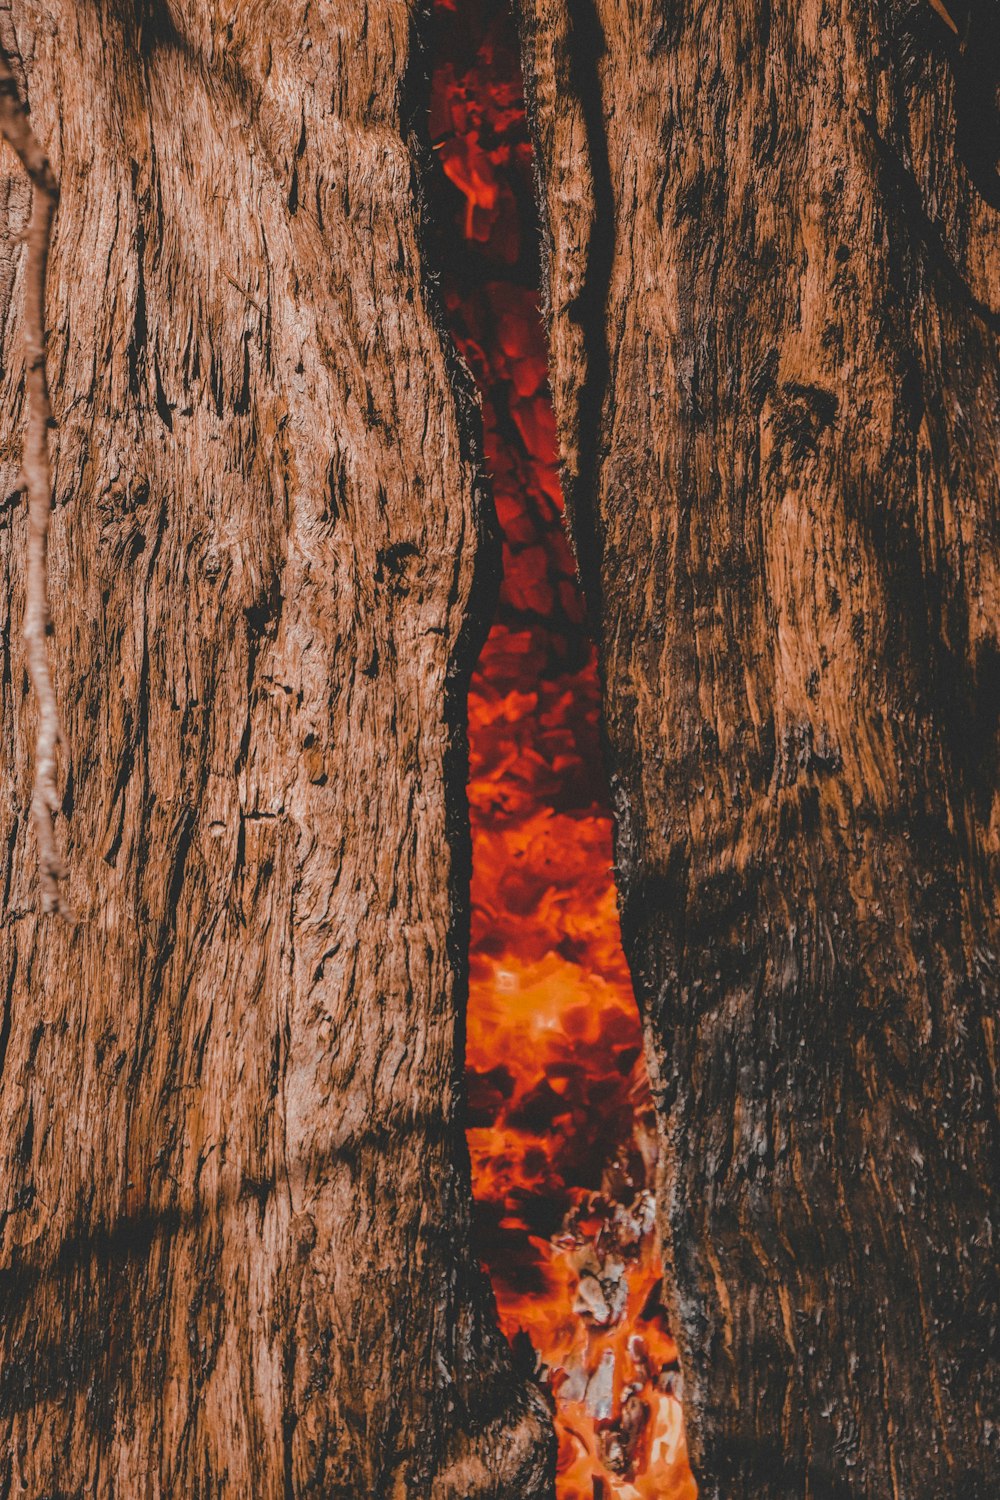 Un primer plano de una sustancia roja en un árbol